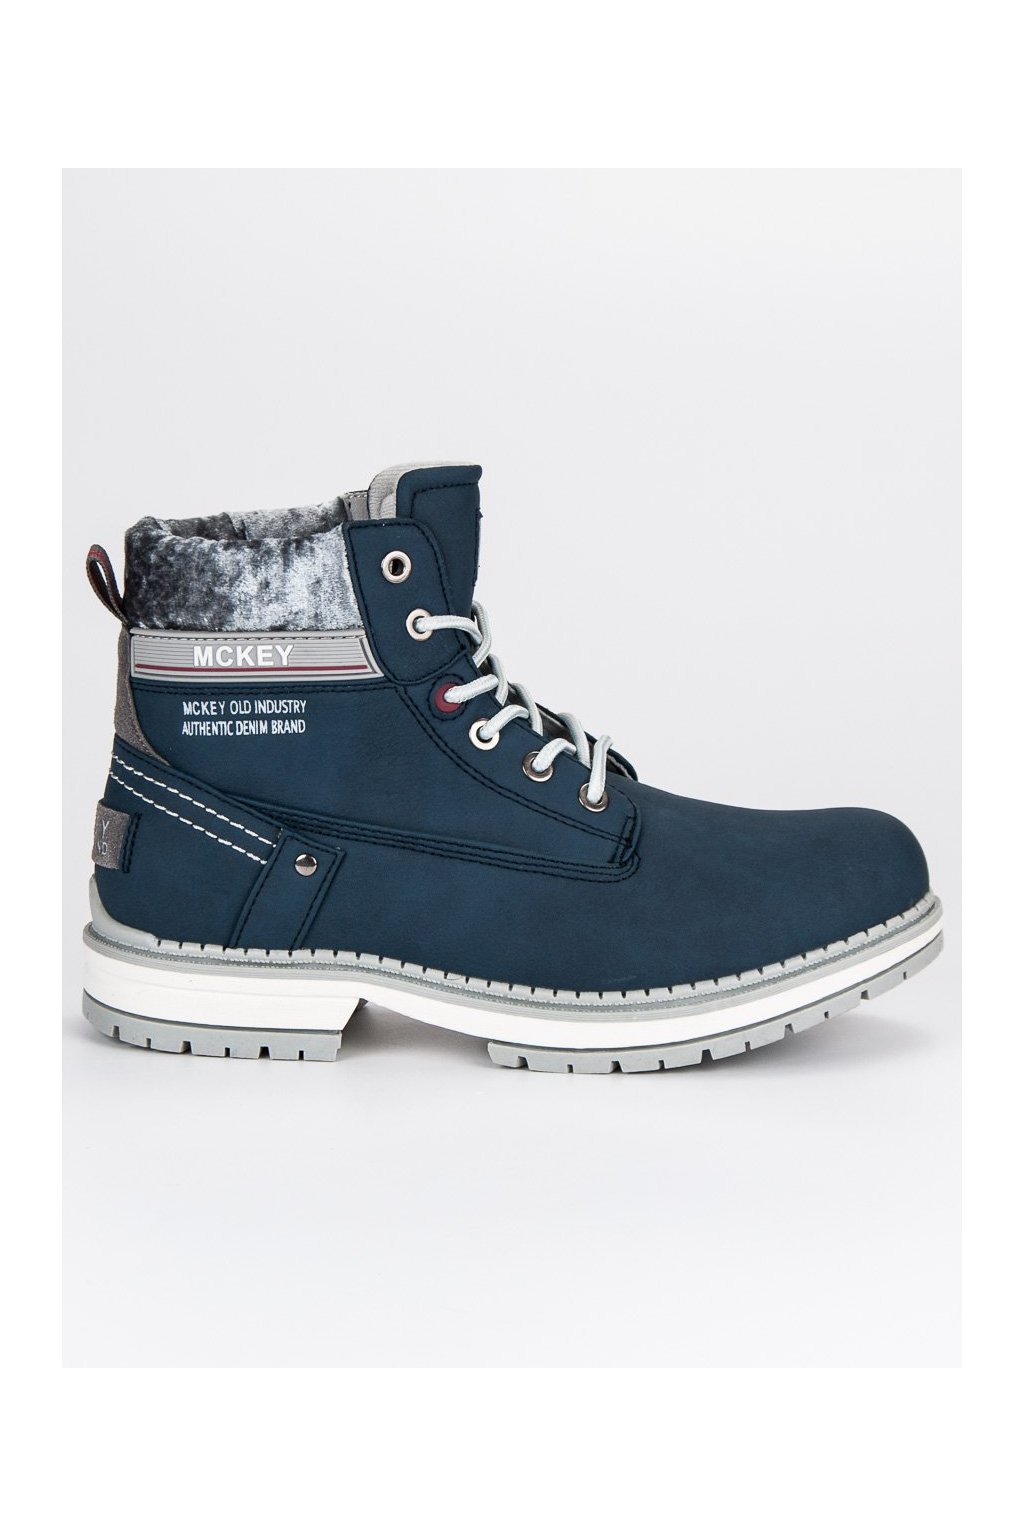 Pohodlné dámske topánky na zimu modré TR401/17N